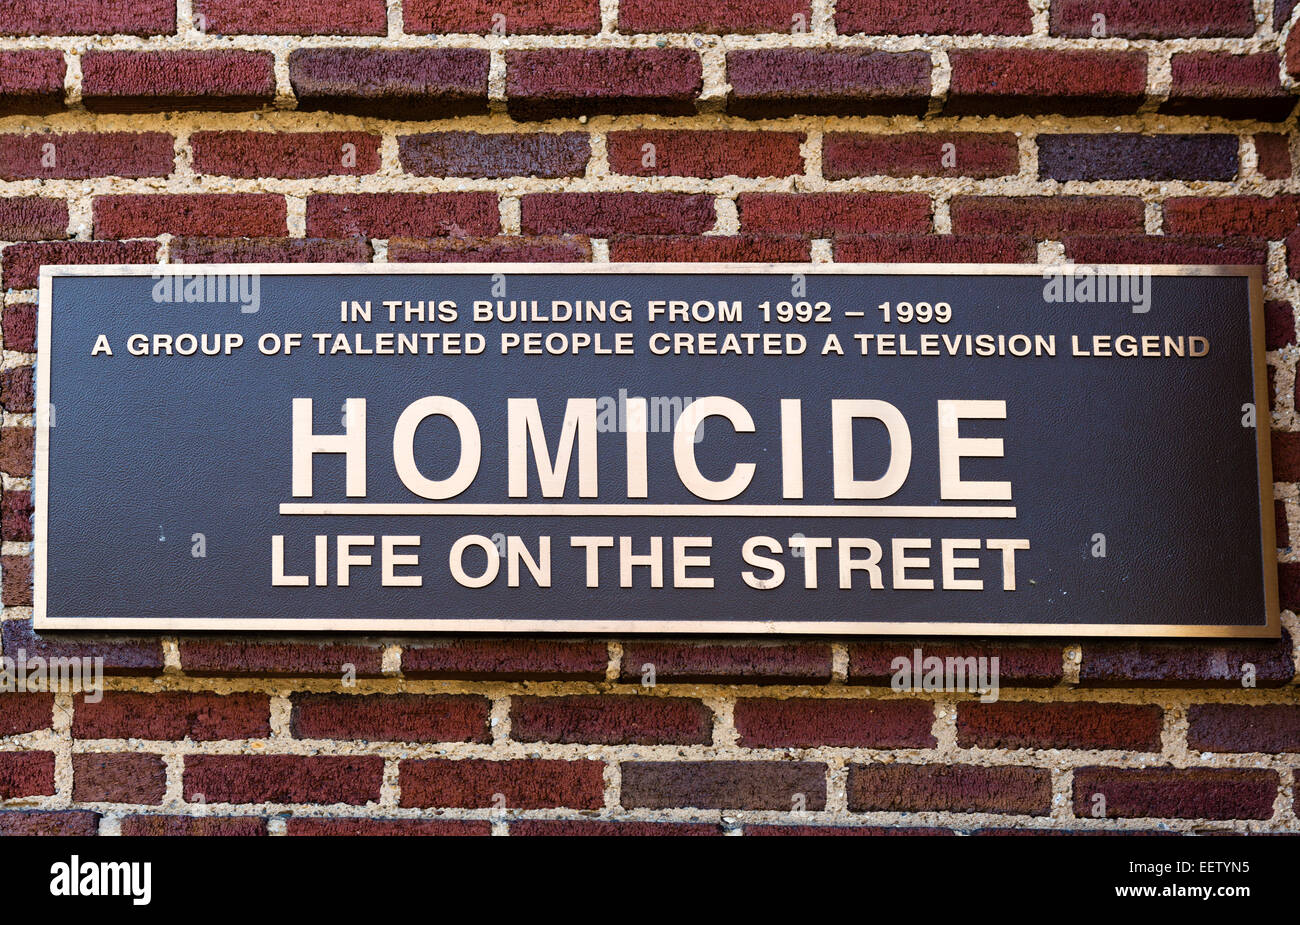 Gedenktafel für die TV-Serices "Homicide: Leben auf der Straße", Stadt Erholung Pier, Fell es Point, Baltimore, Maryland, USA Stockfoto